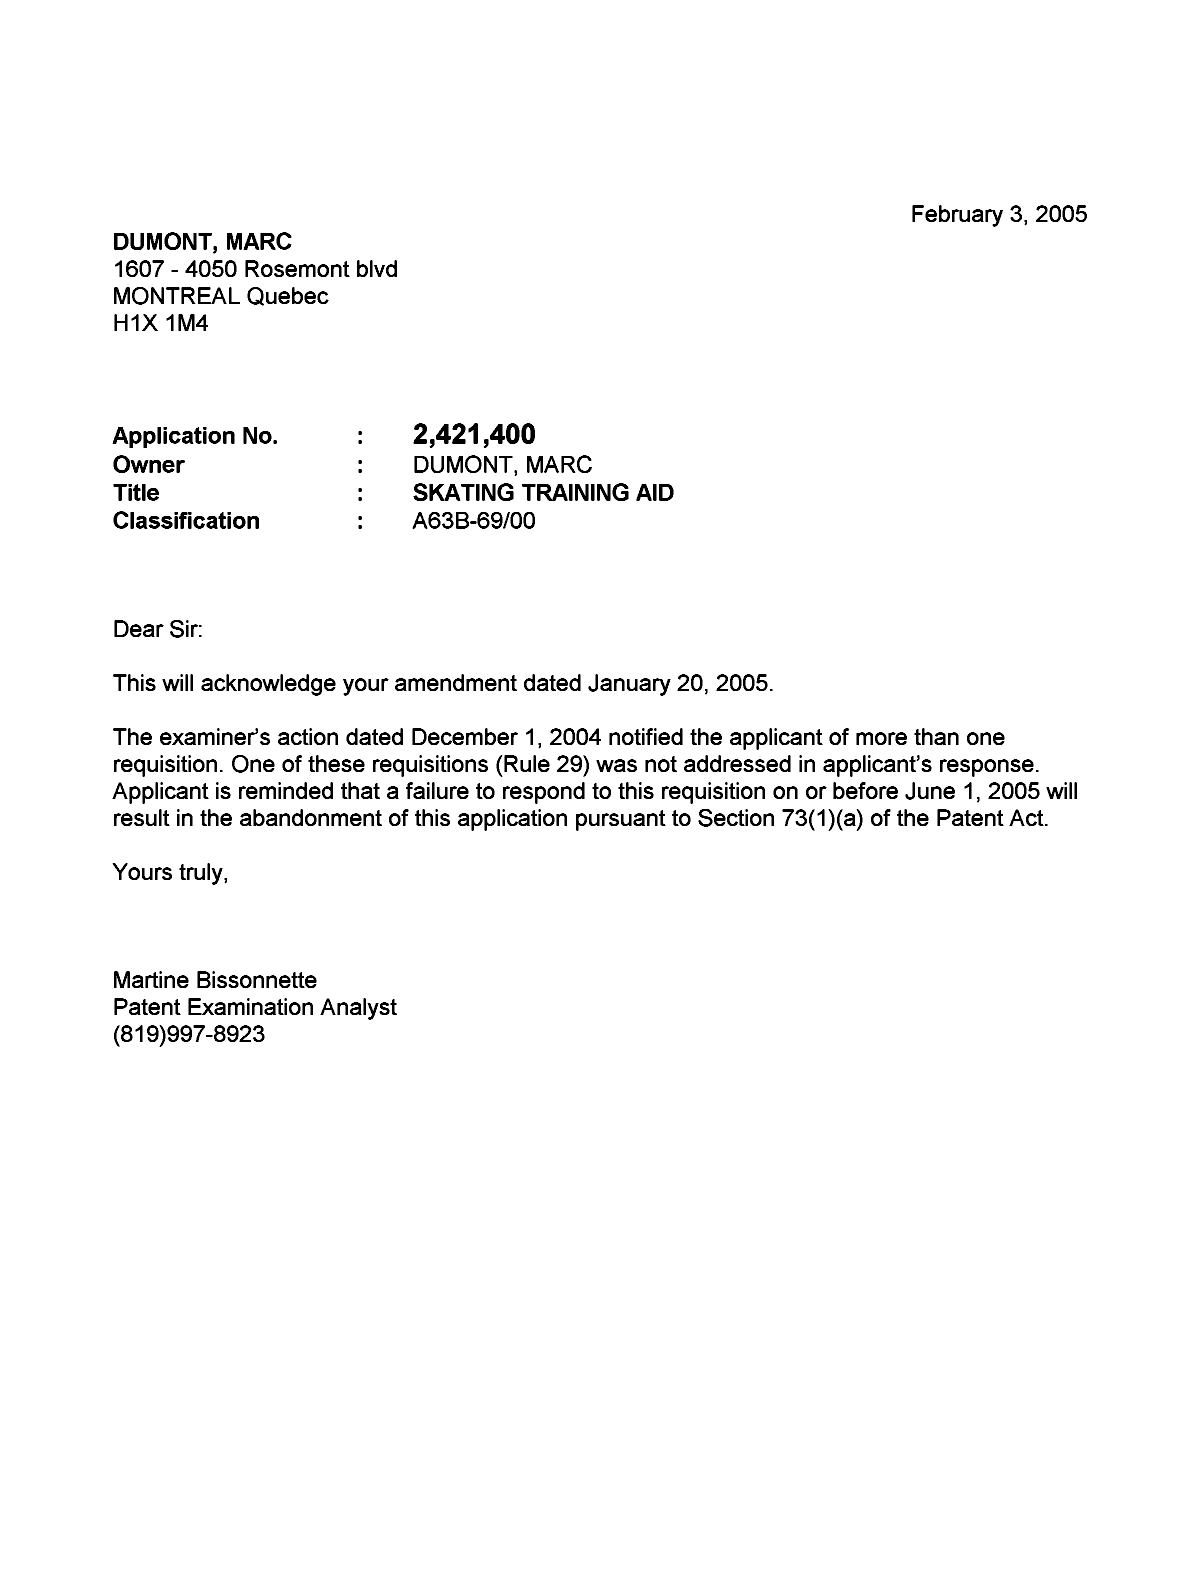 Document de brevet canadien 2421400. Correspondance 20041203. Image 1 de 1